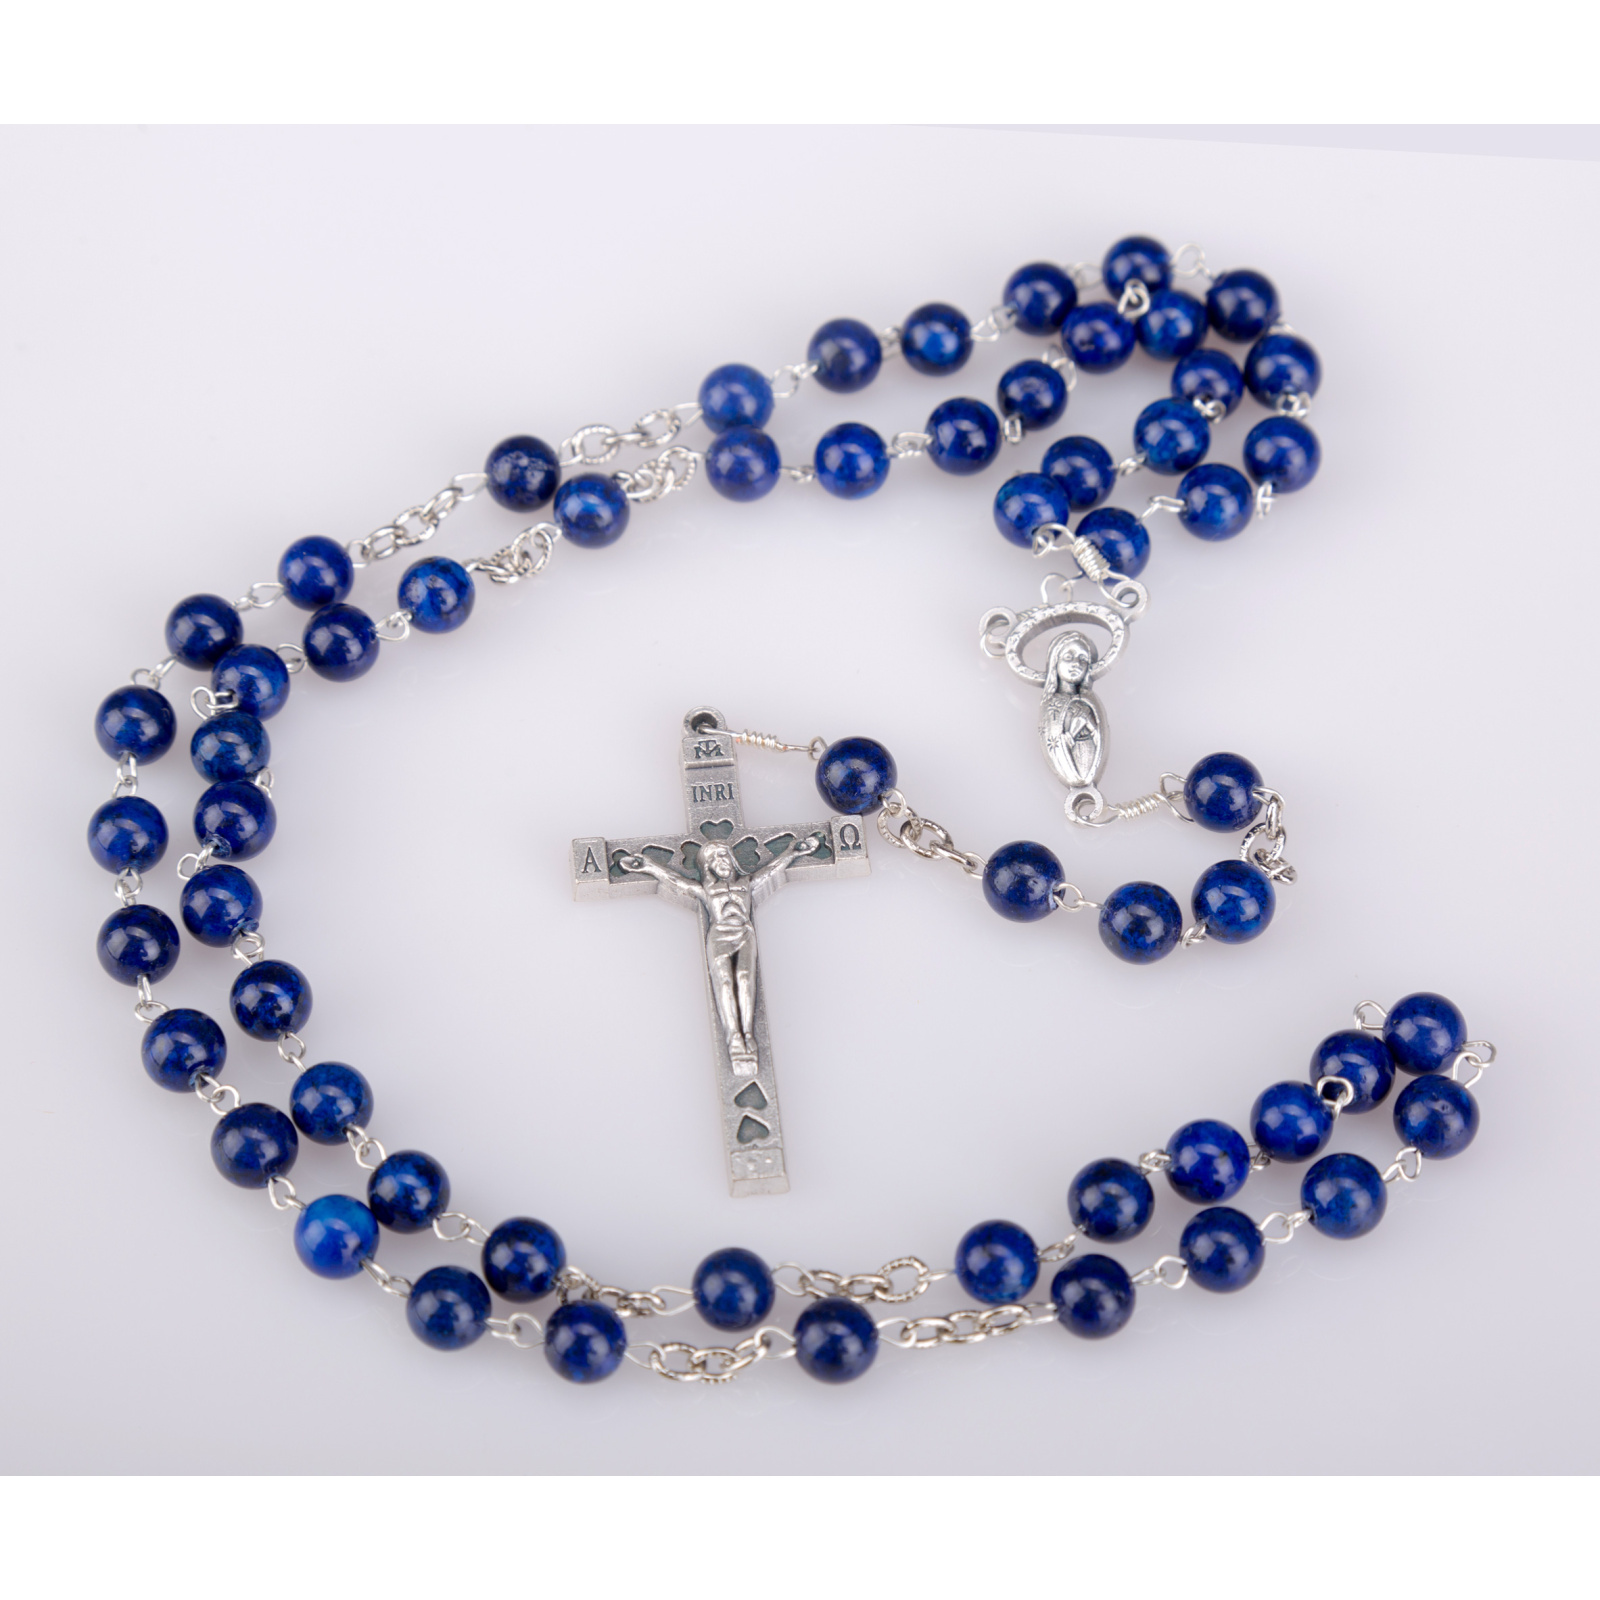 Virgin Mary rosary